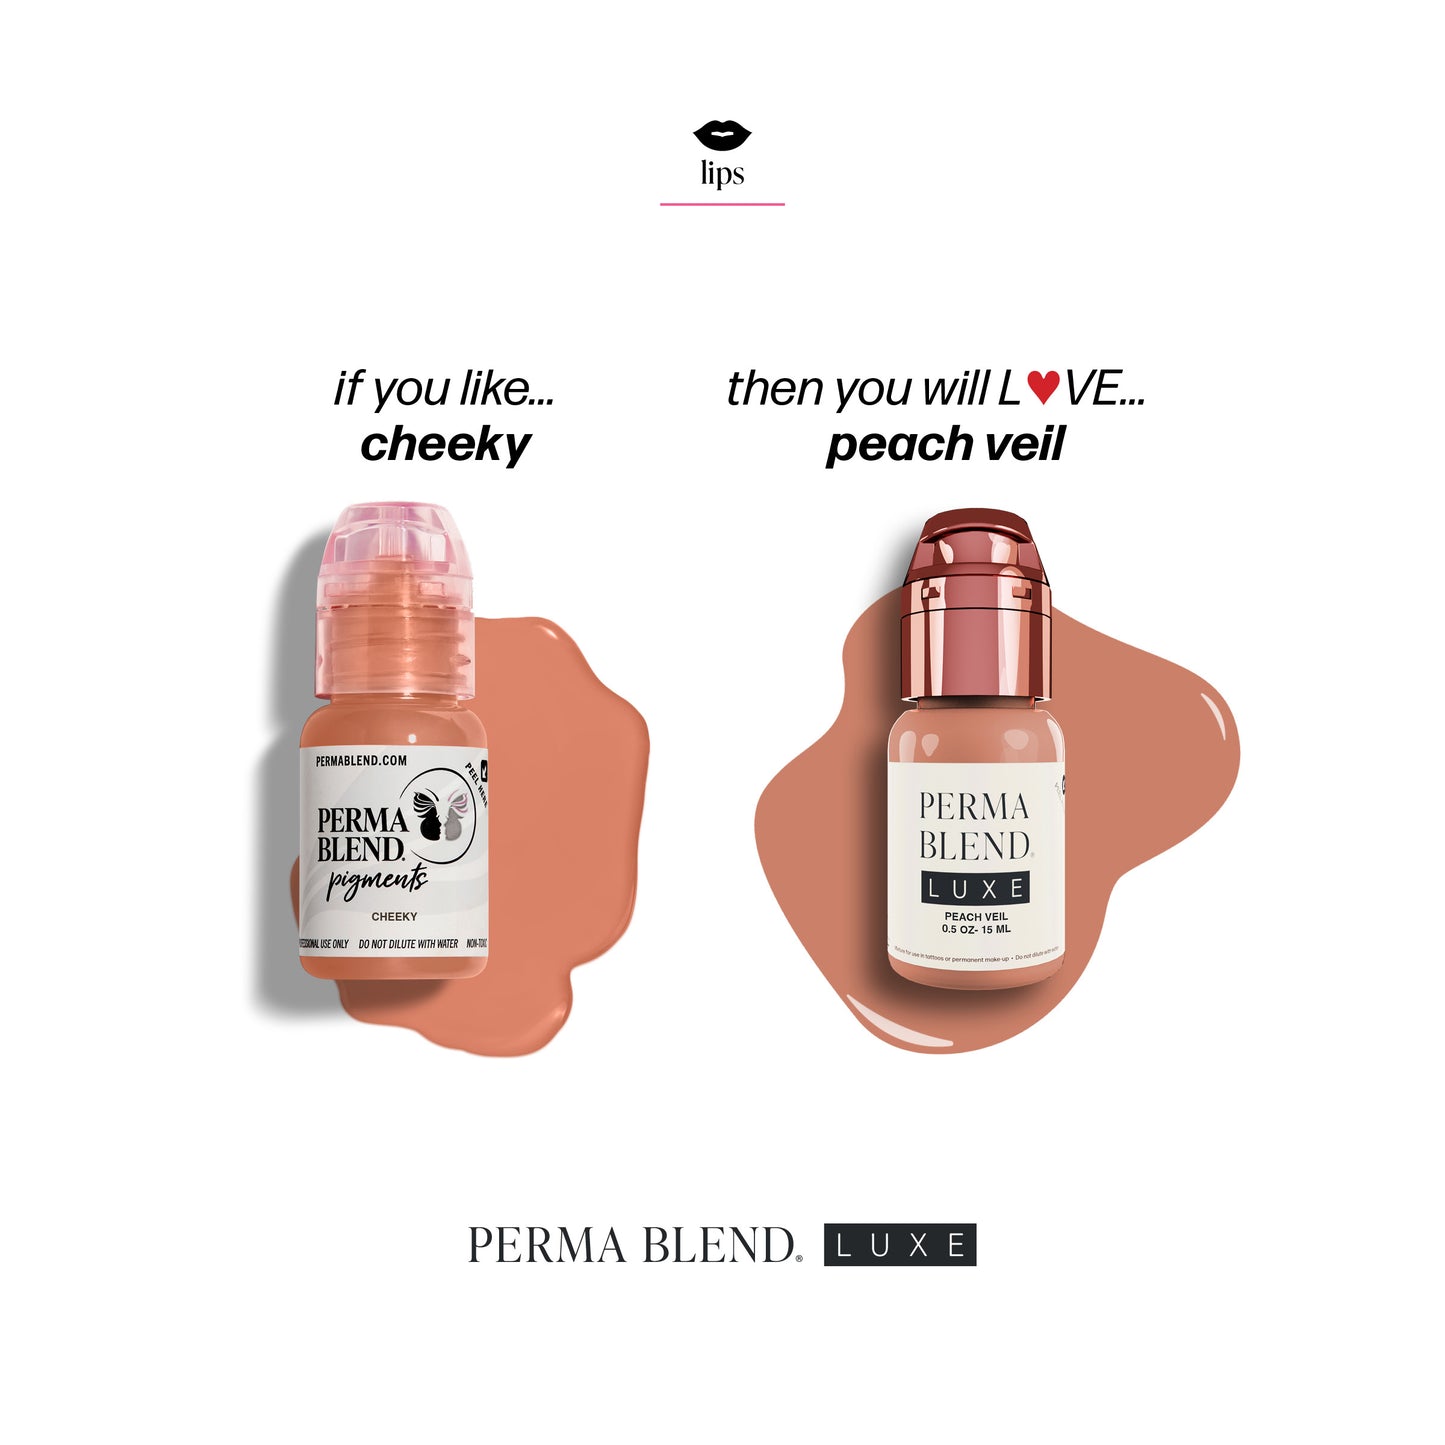 Perma Blend LUXE Peach Veil